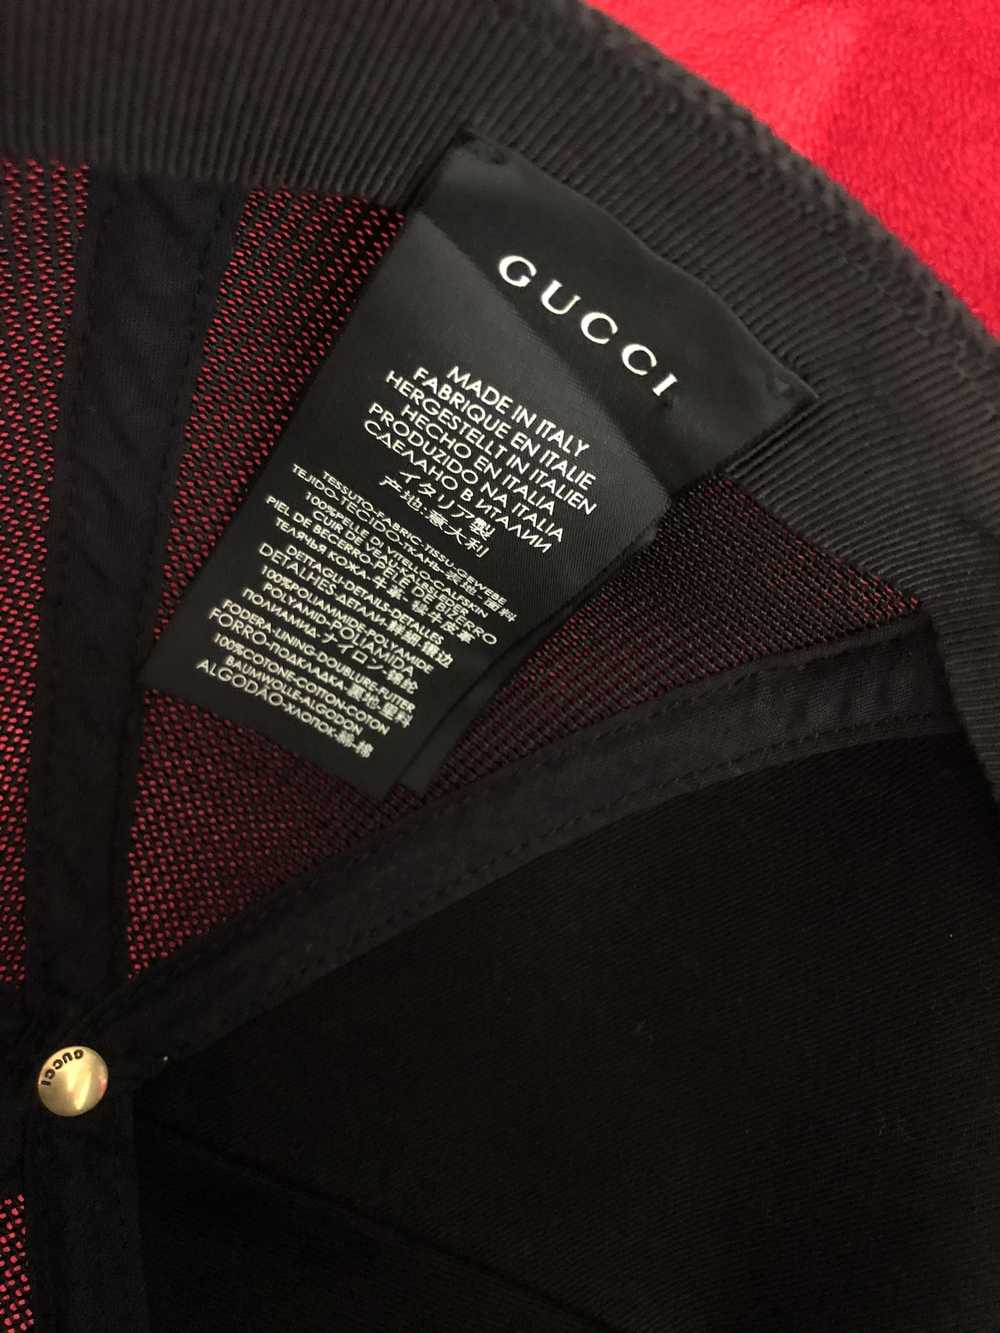 Gucci Gucci hat - image 5